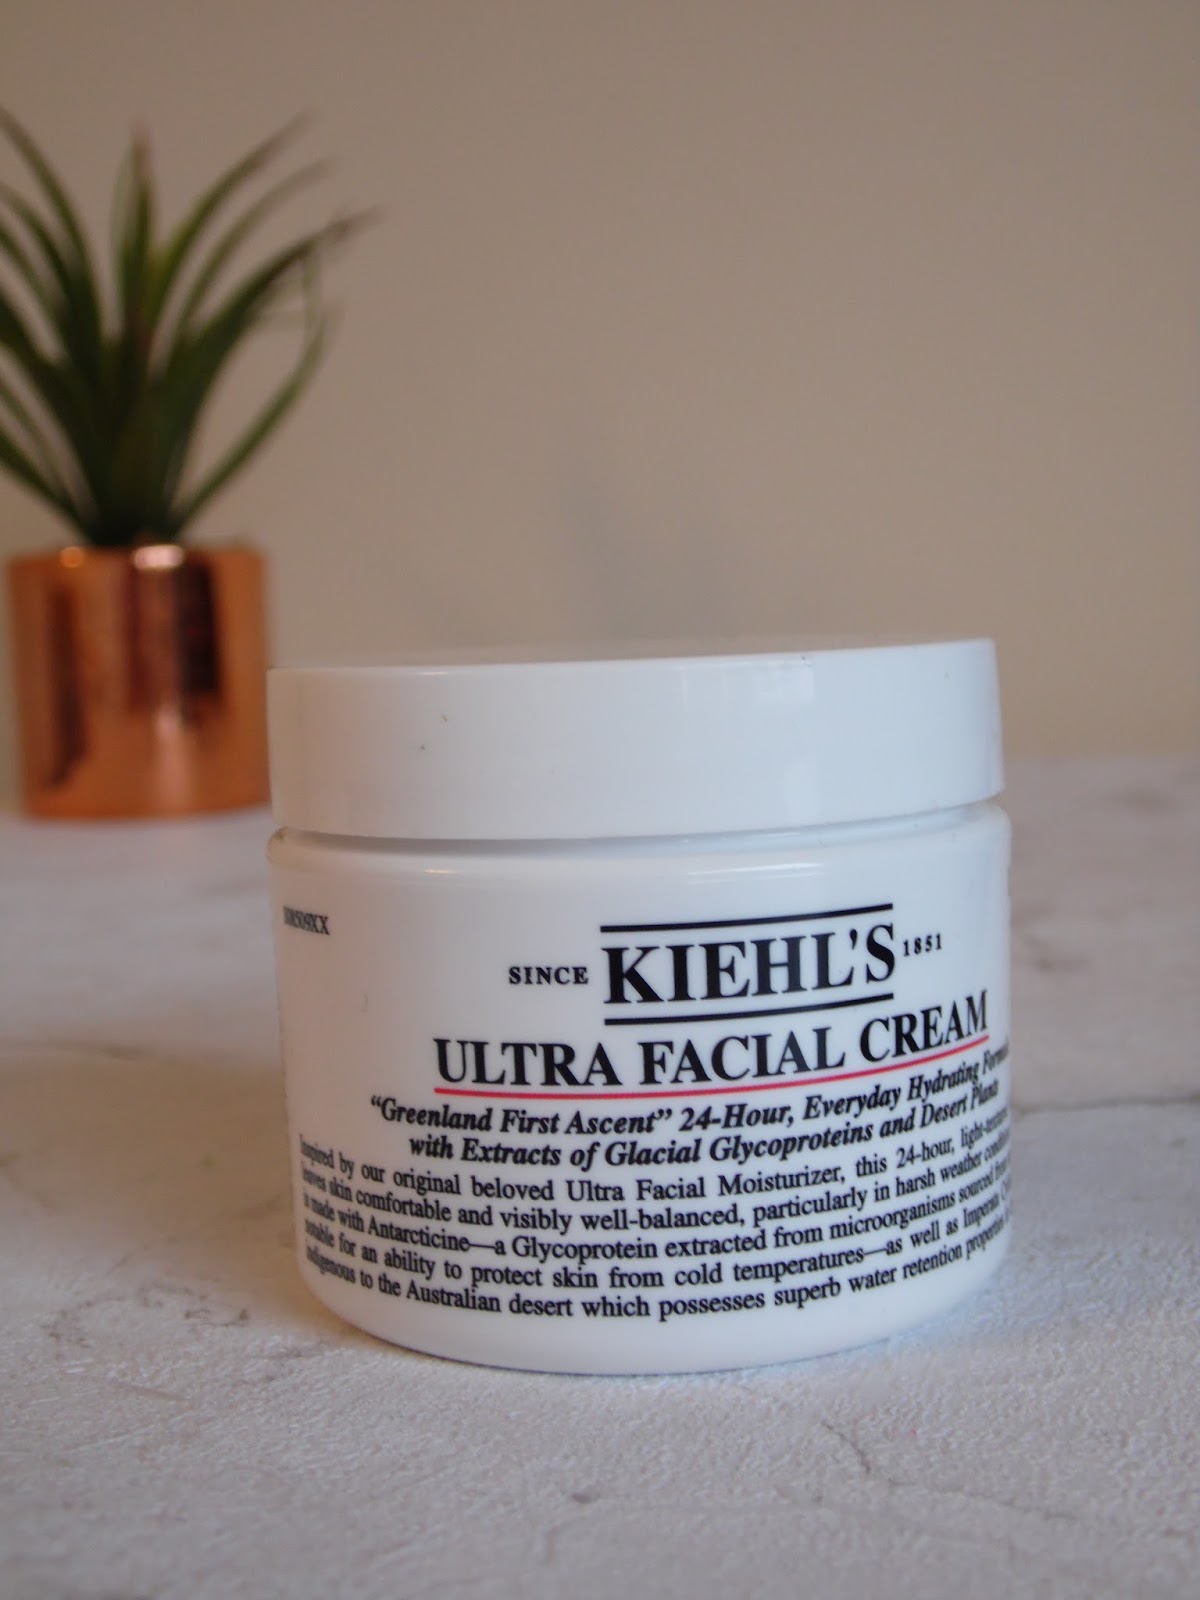 kiehl's ultra facial cream pot close up